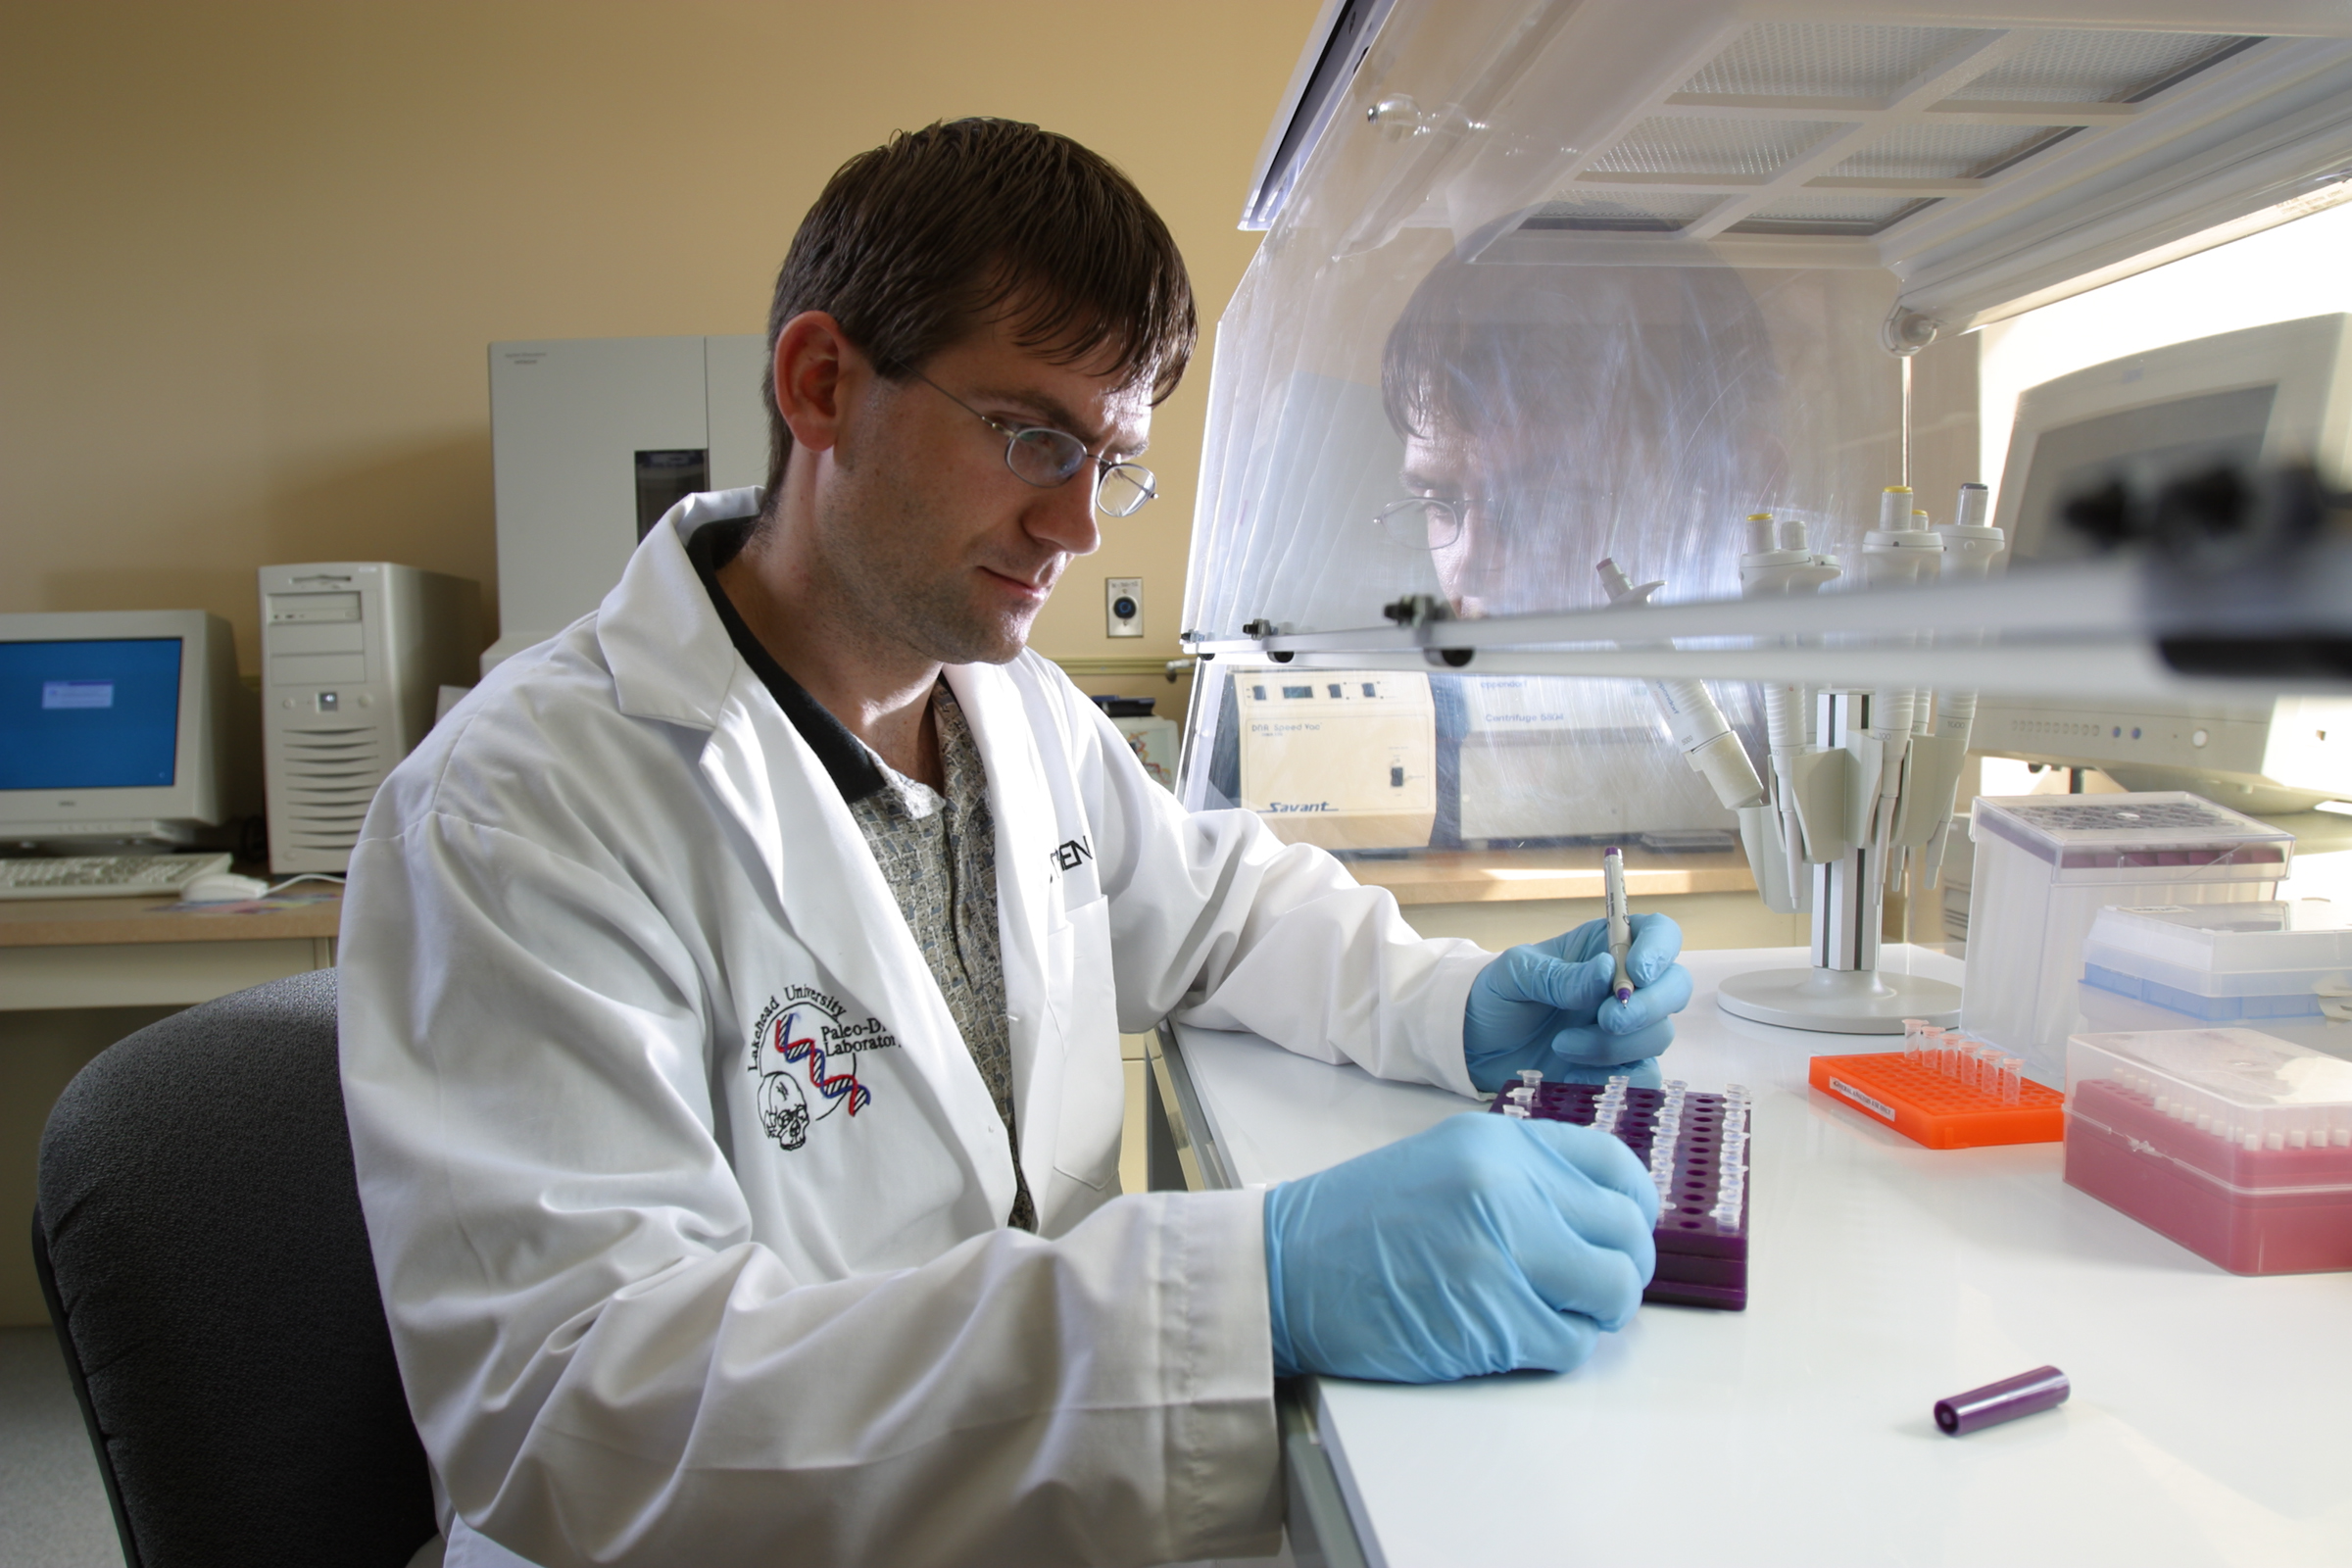 Stephen Fratpietro in labl coat working in Paleo-DNA Lab